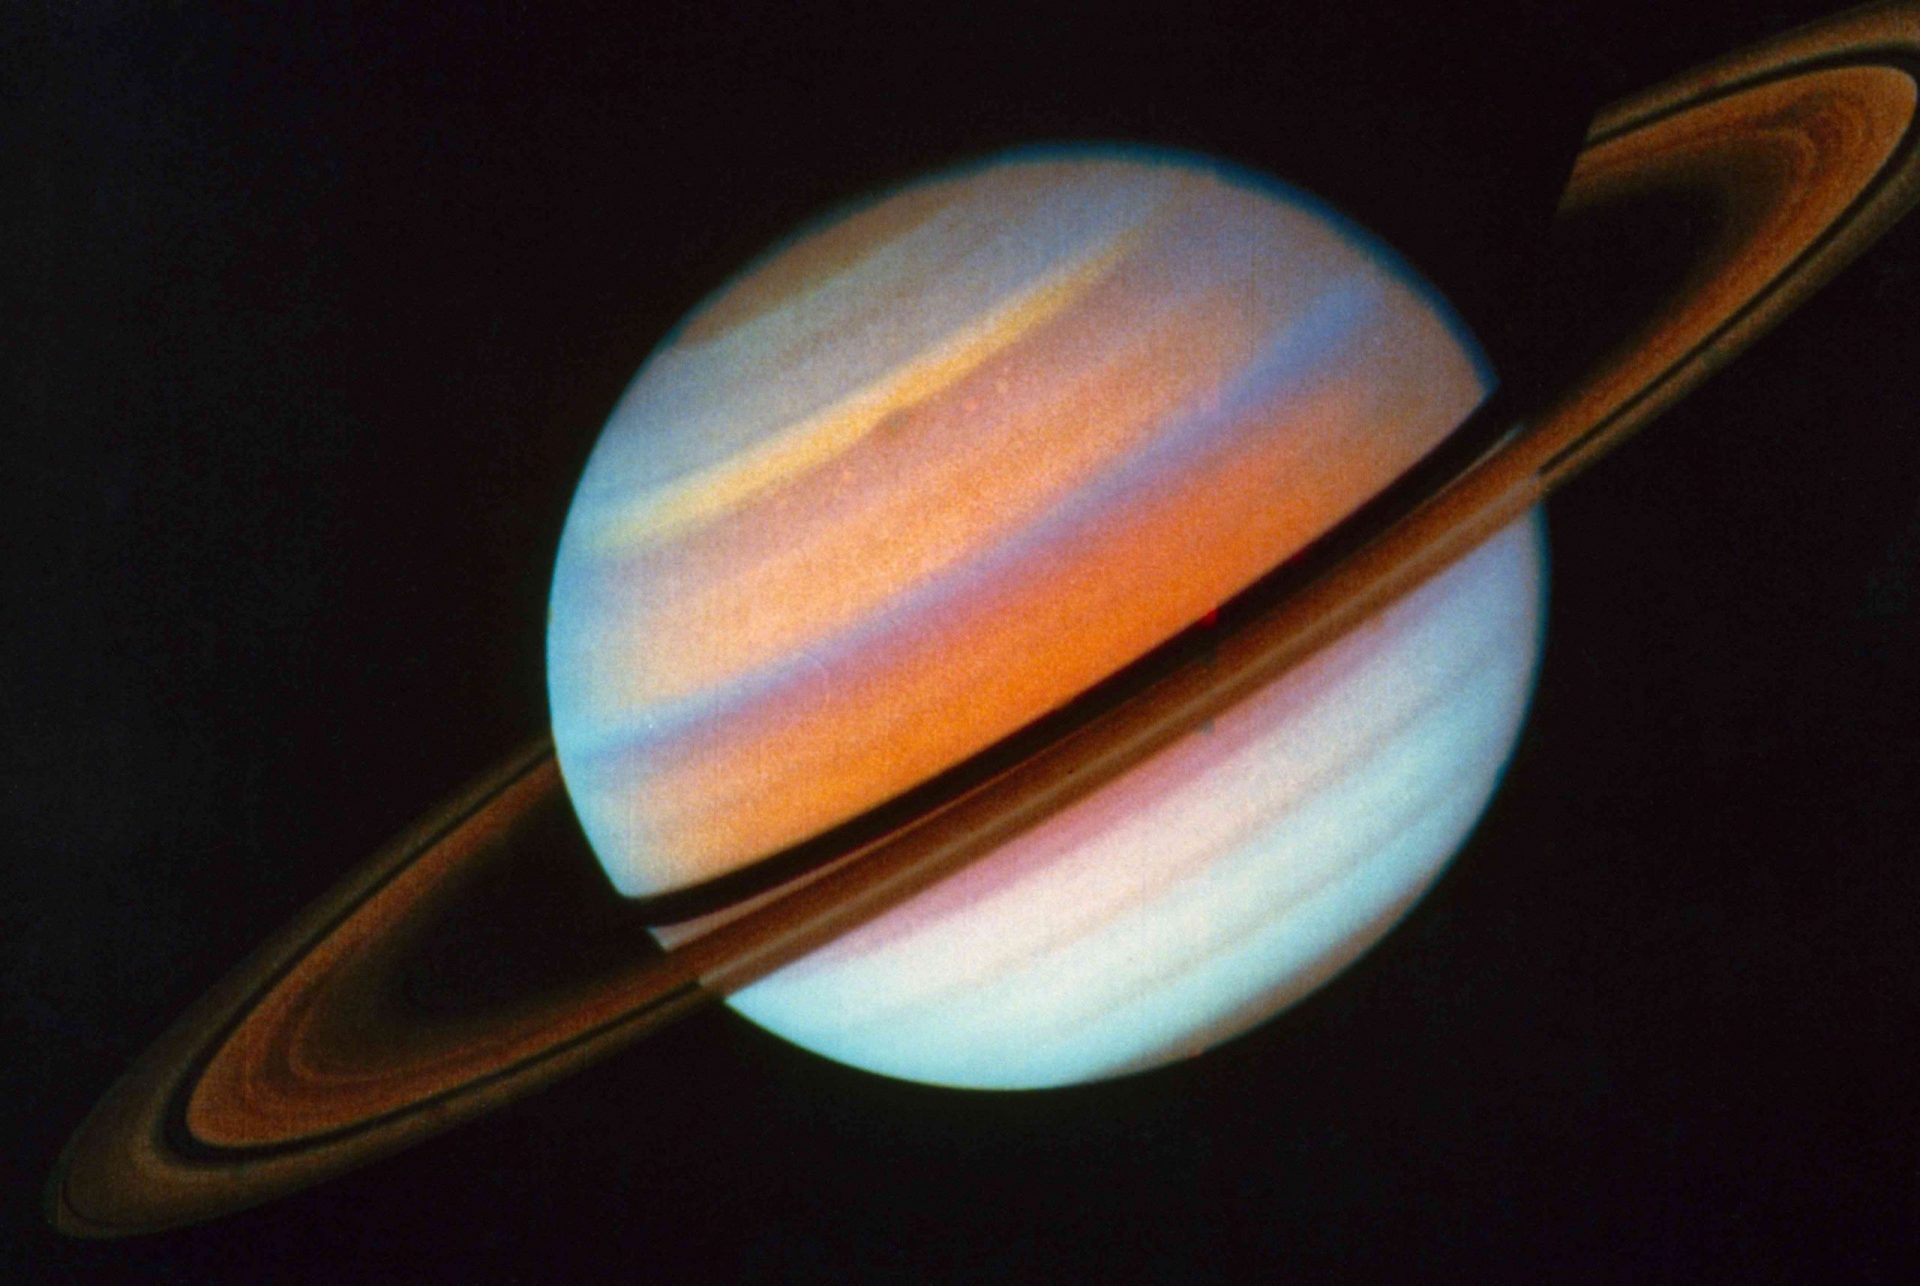 Los coloridos anillos de Saturno